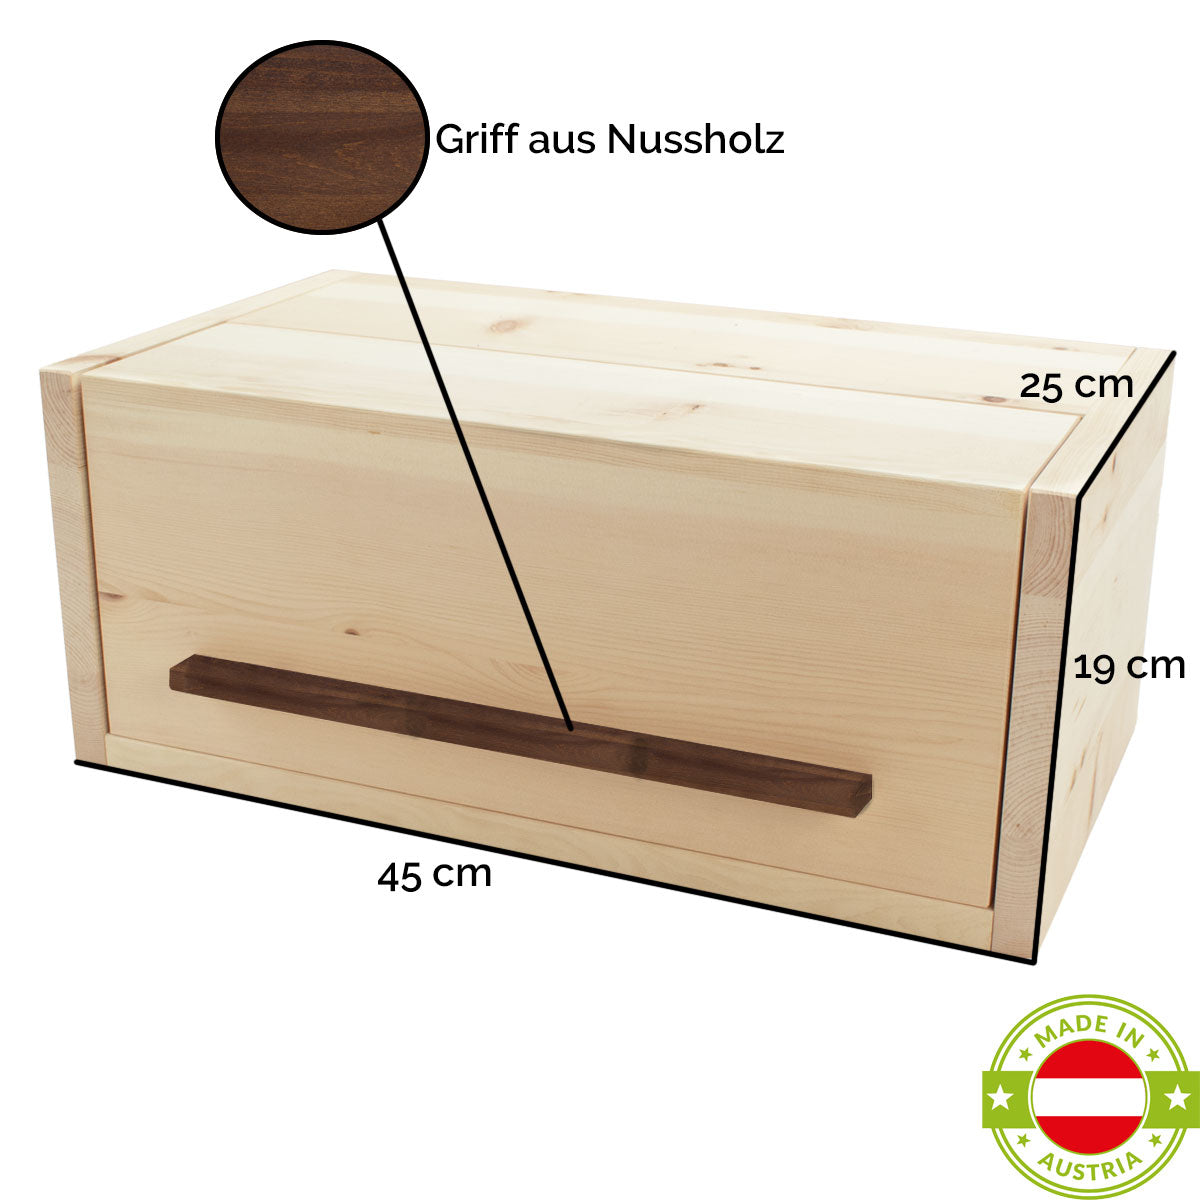 Brotkasten aus Zirbenholz | mit Nussgriff und Klappdeckel | 45 x 25 x 19 cm | inkl. Zirbenholz-Gitter